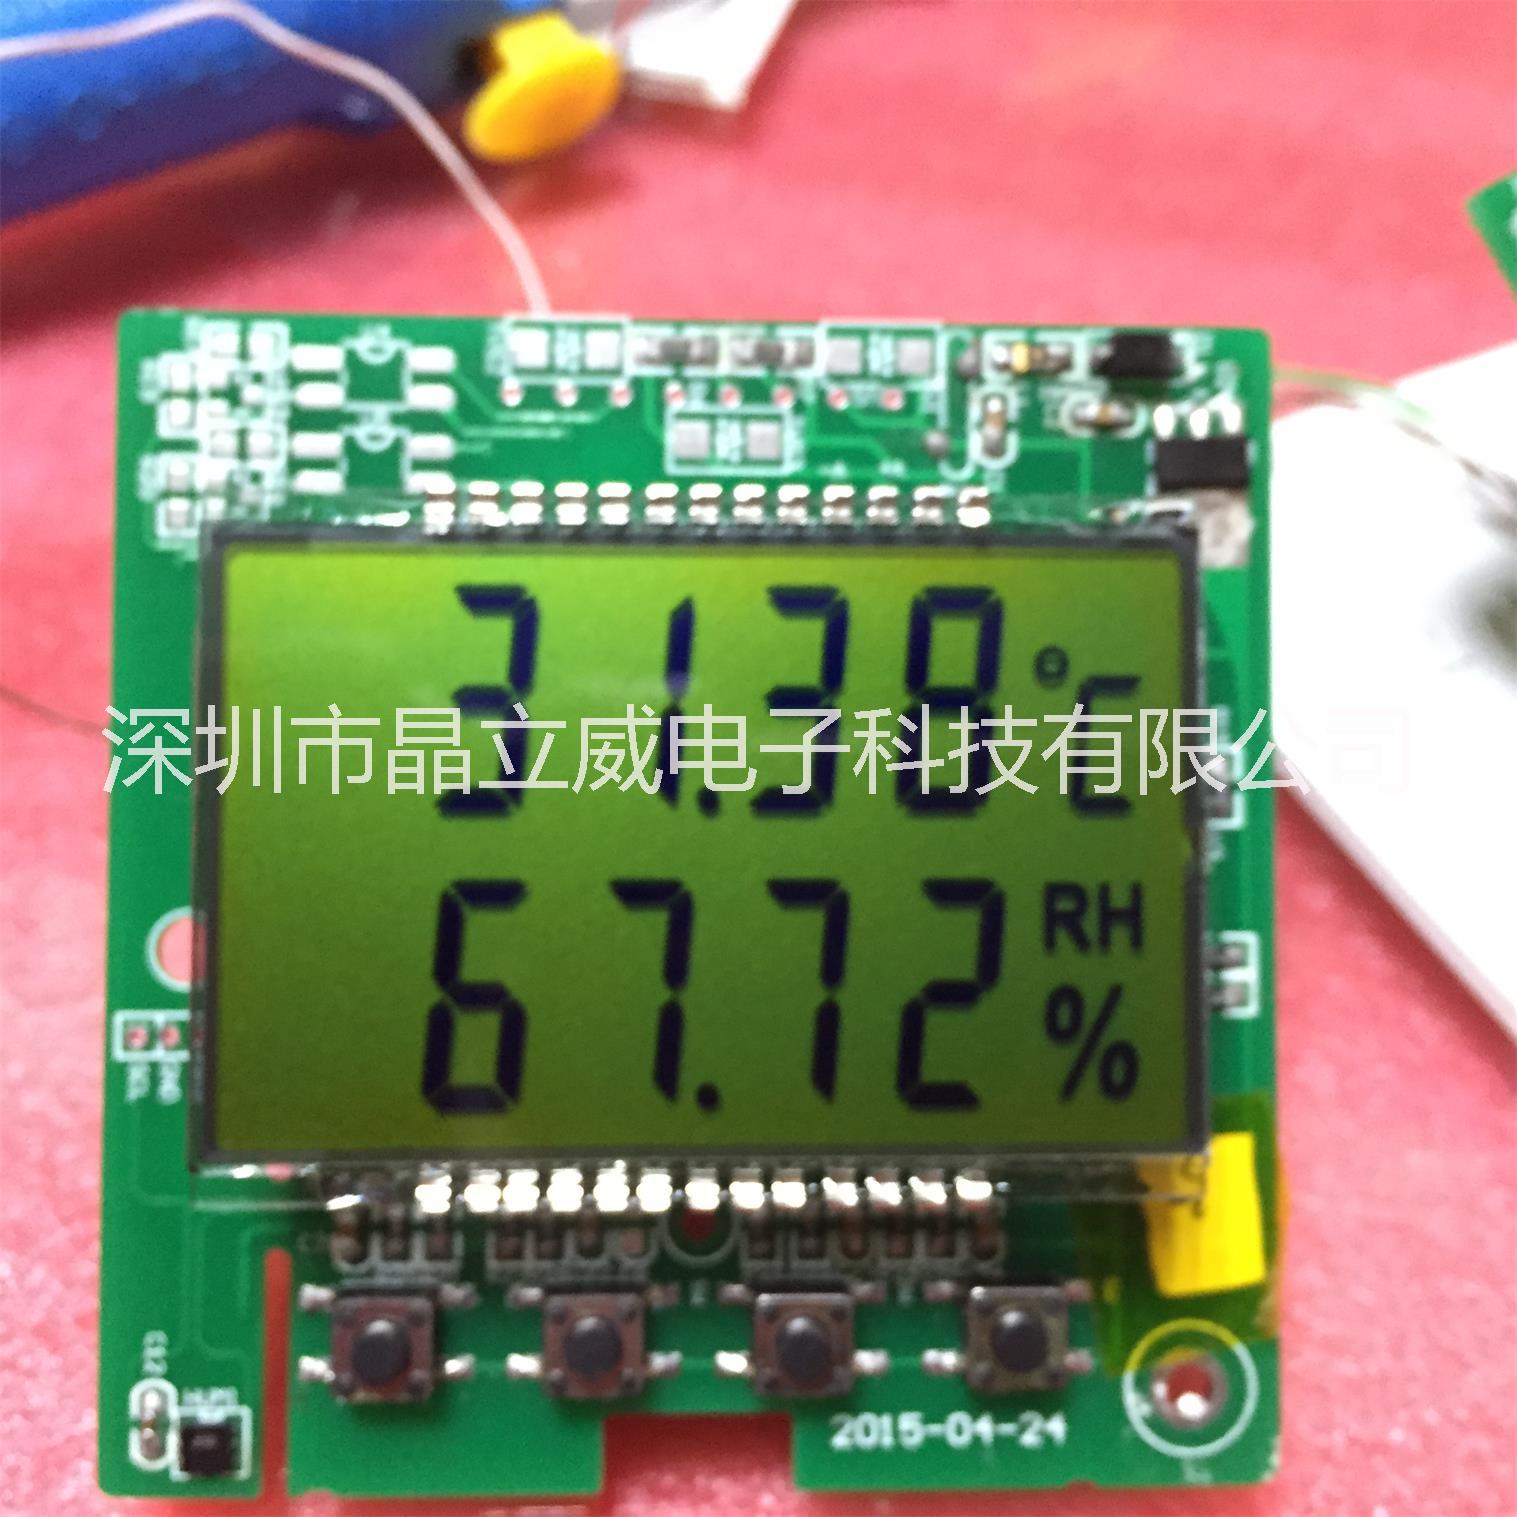 深圳市段码LCD液晶显示屏厂家供应段码LCD液晶显示屏(TN/HTN/STN/VA黑膜）专业制造，厂家定制。